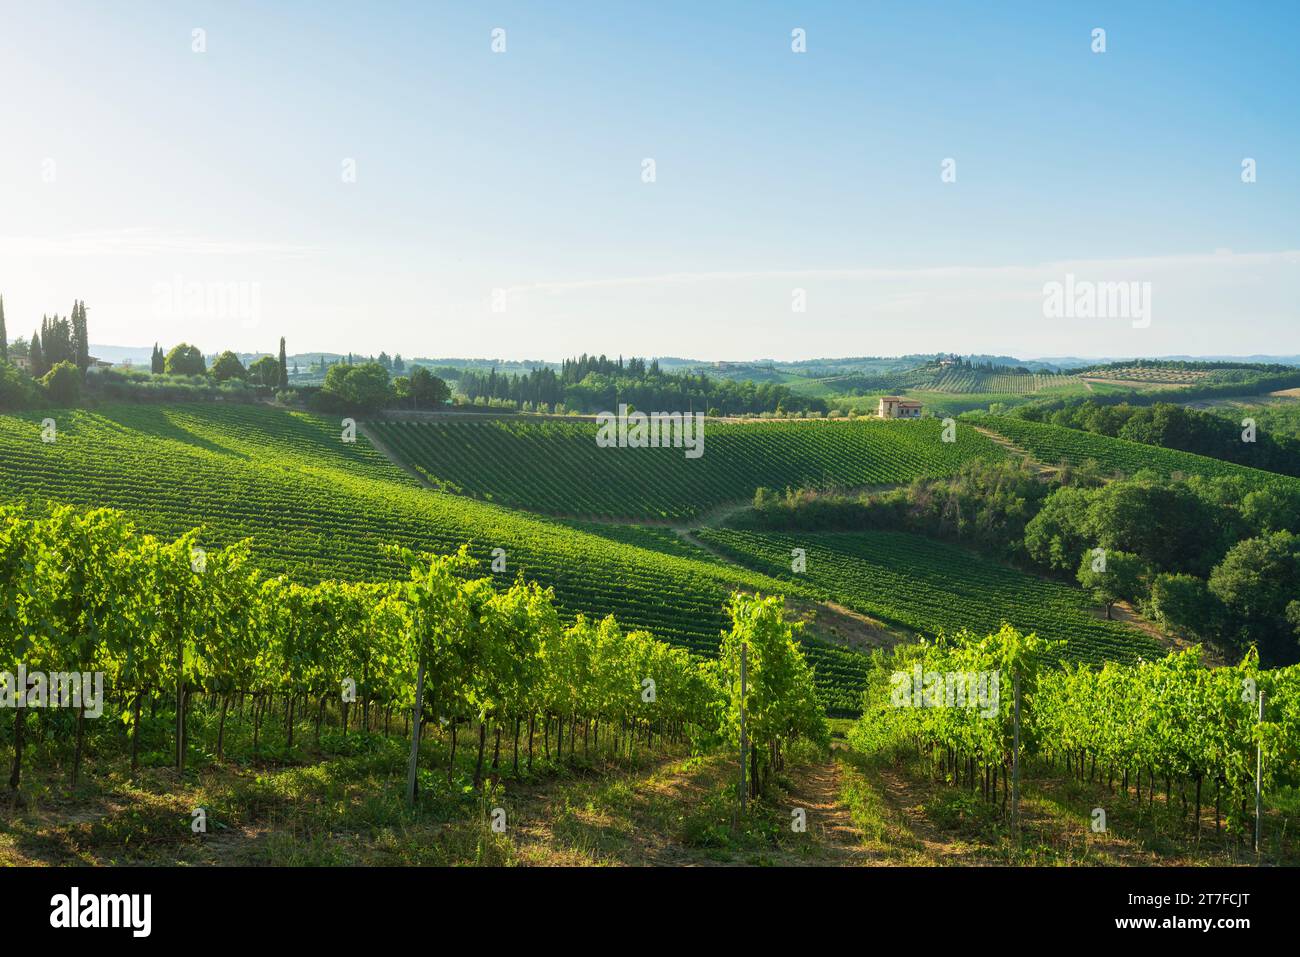 Vineyards in the San Gimignano countryside. Siena province, Tuscany region, Italy Stock Photo